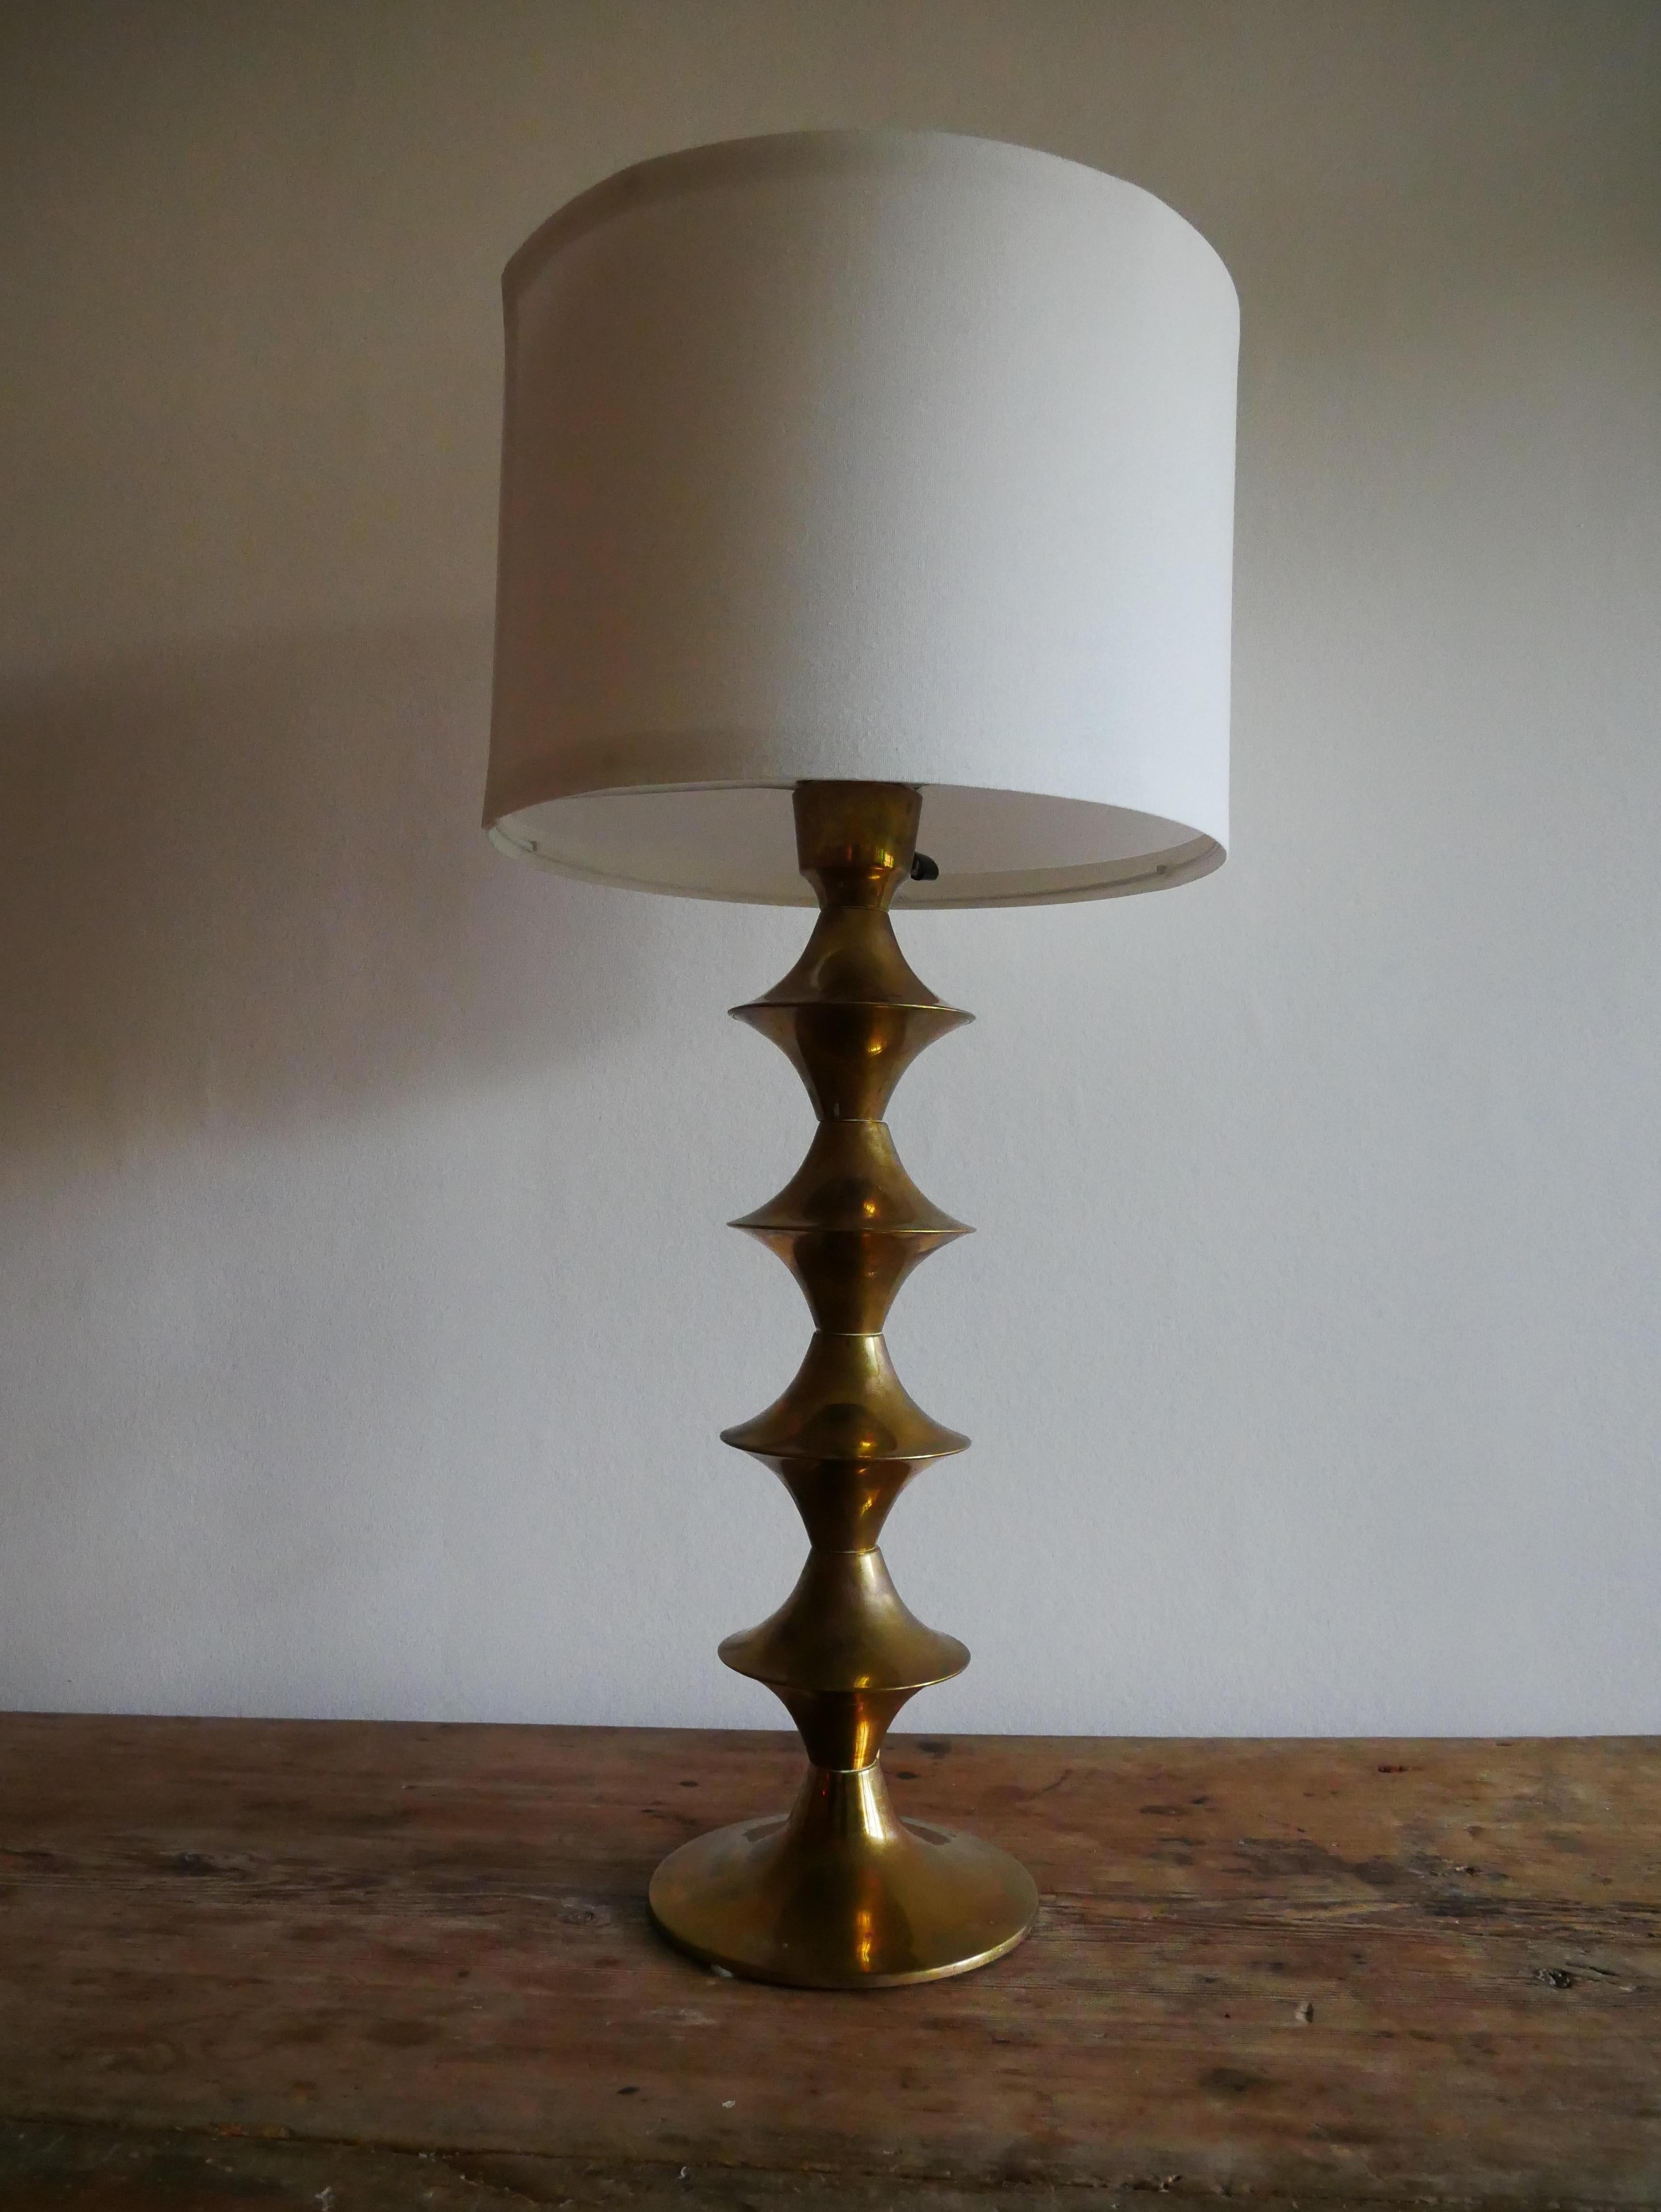 Elit AB Stehleuchte, hergestellt in Schweden in den 1960er Jahren.

Schwere Lampe aus patiniertem Messing mit beeindruckender Form.

Höhe: 52 cm
Durchmesser: 17 cm

Der Lampenschirm ist nicht enthalten.